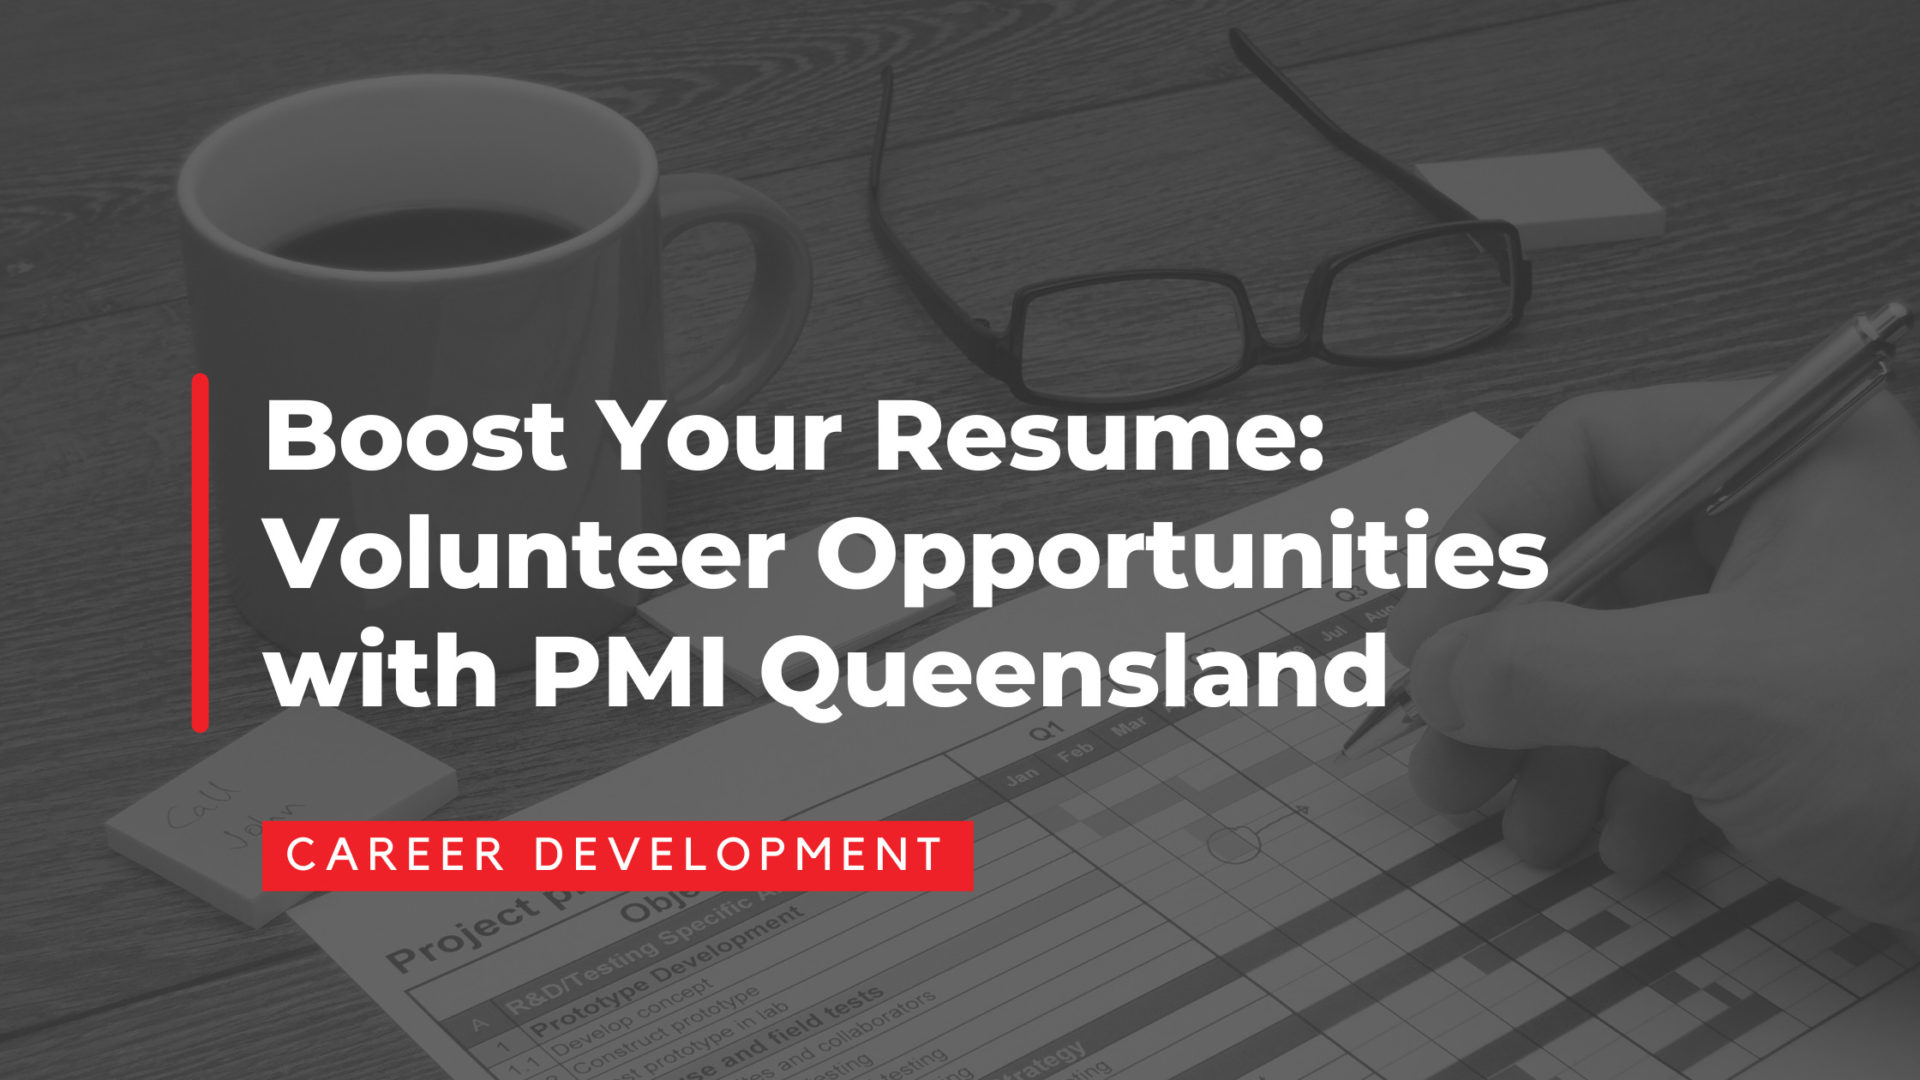 Boost Your Resume: Volunteer Opportunities with PMI Queensland